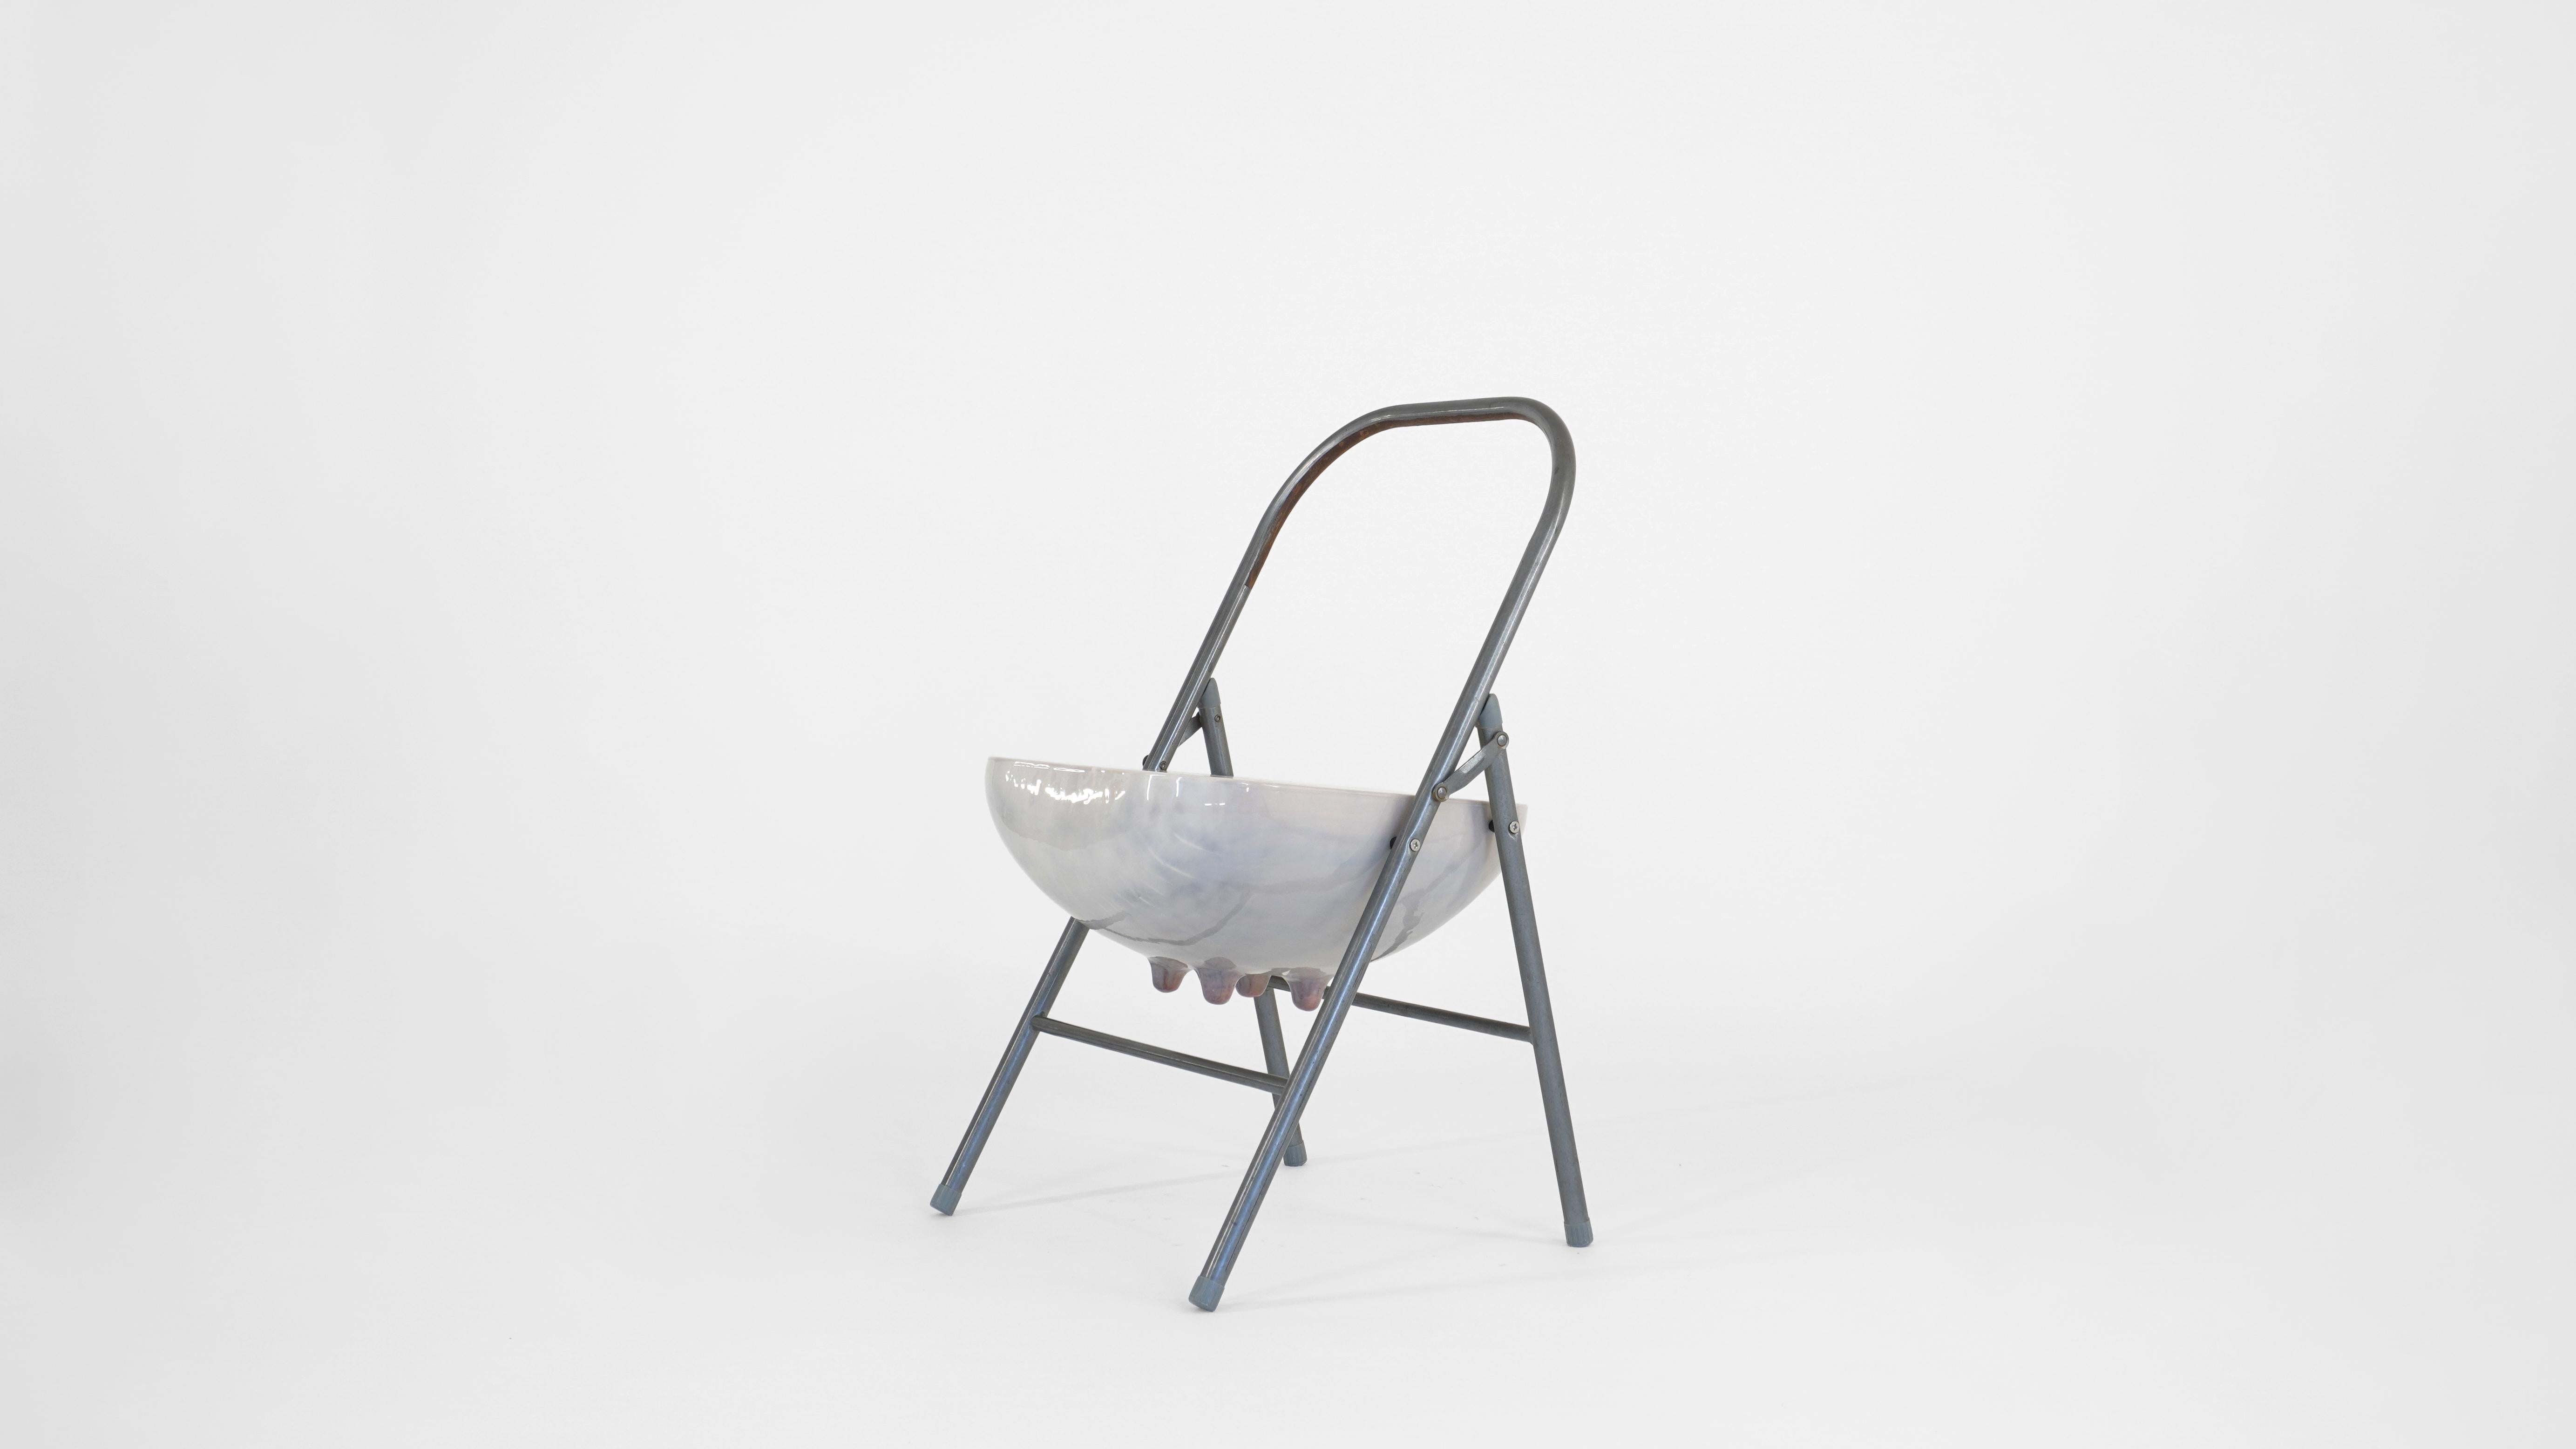 Klappbarer Udder-Stuhl von Henry D'ath
Abmessungen: T 45 x B 45 x H 77,5 cm
MATERIALIEN: Holz, Stahl. 
Erhältlich in den Ausführungen: Weiß/Rot glänzend. 


Henry d'ath ist ein in Neuseeland geborener und in Hongkong lebender Künstler und Architekt.